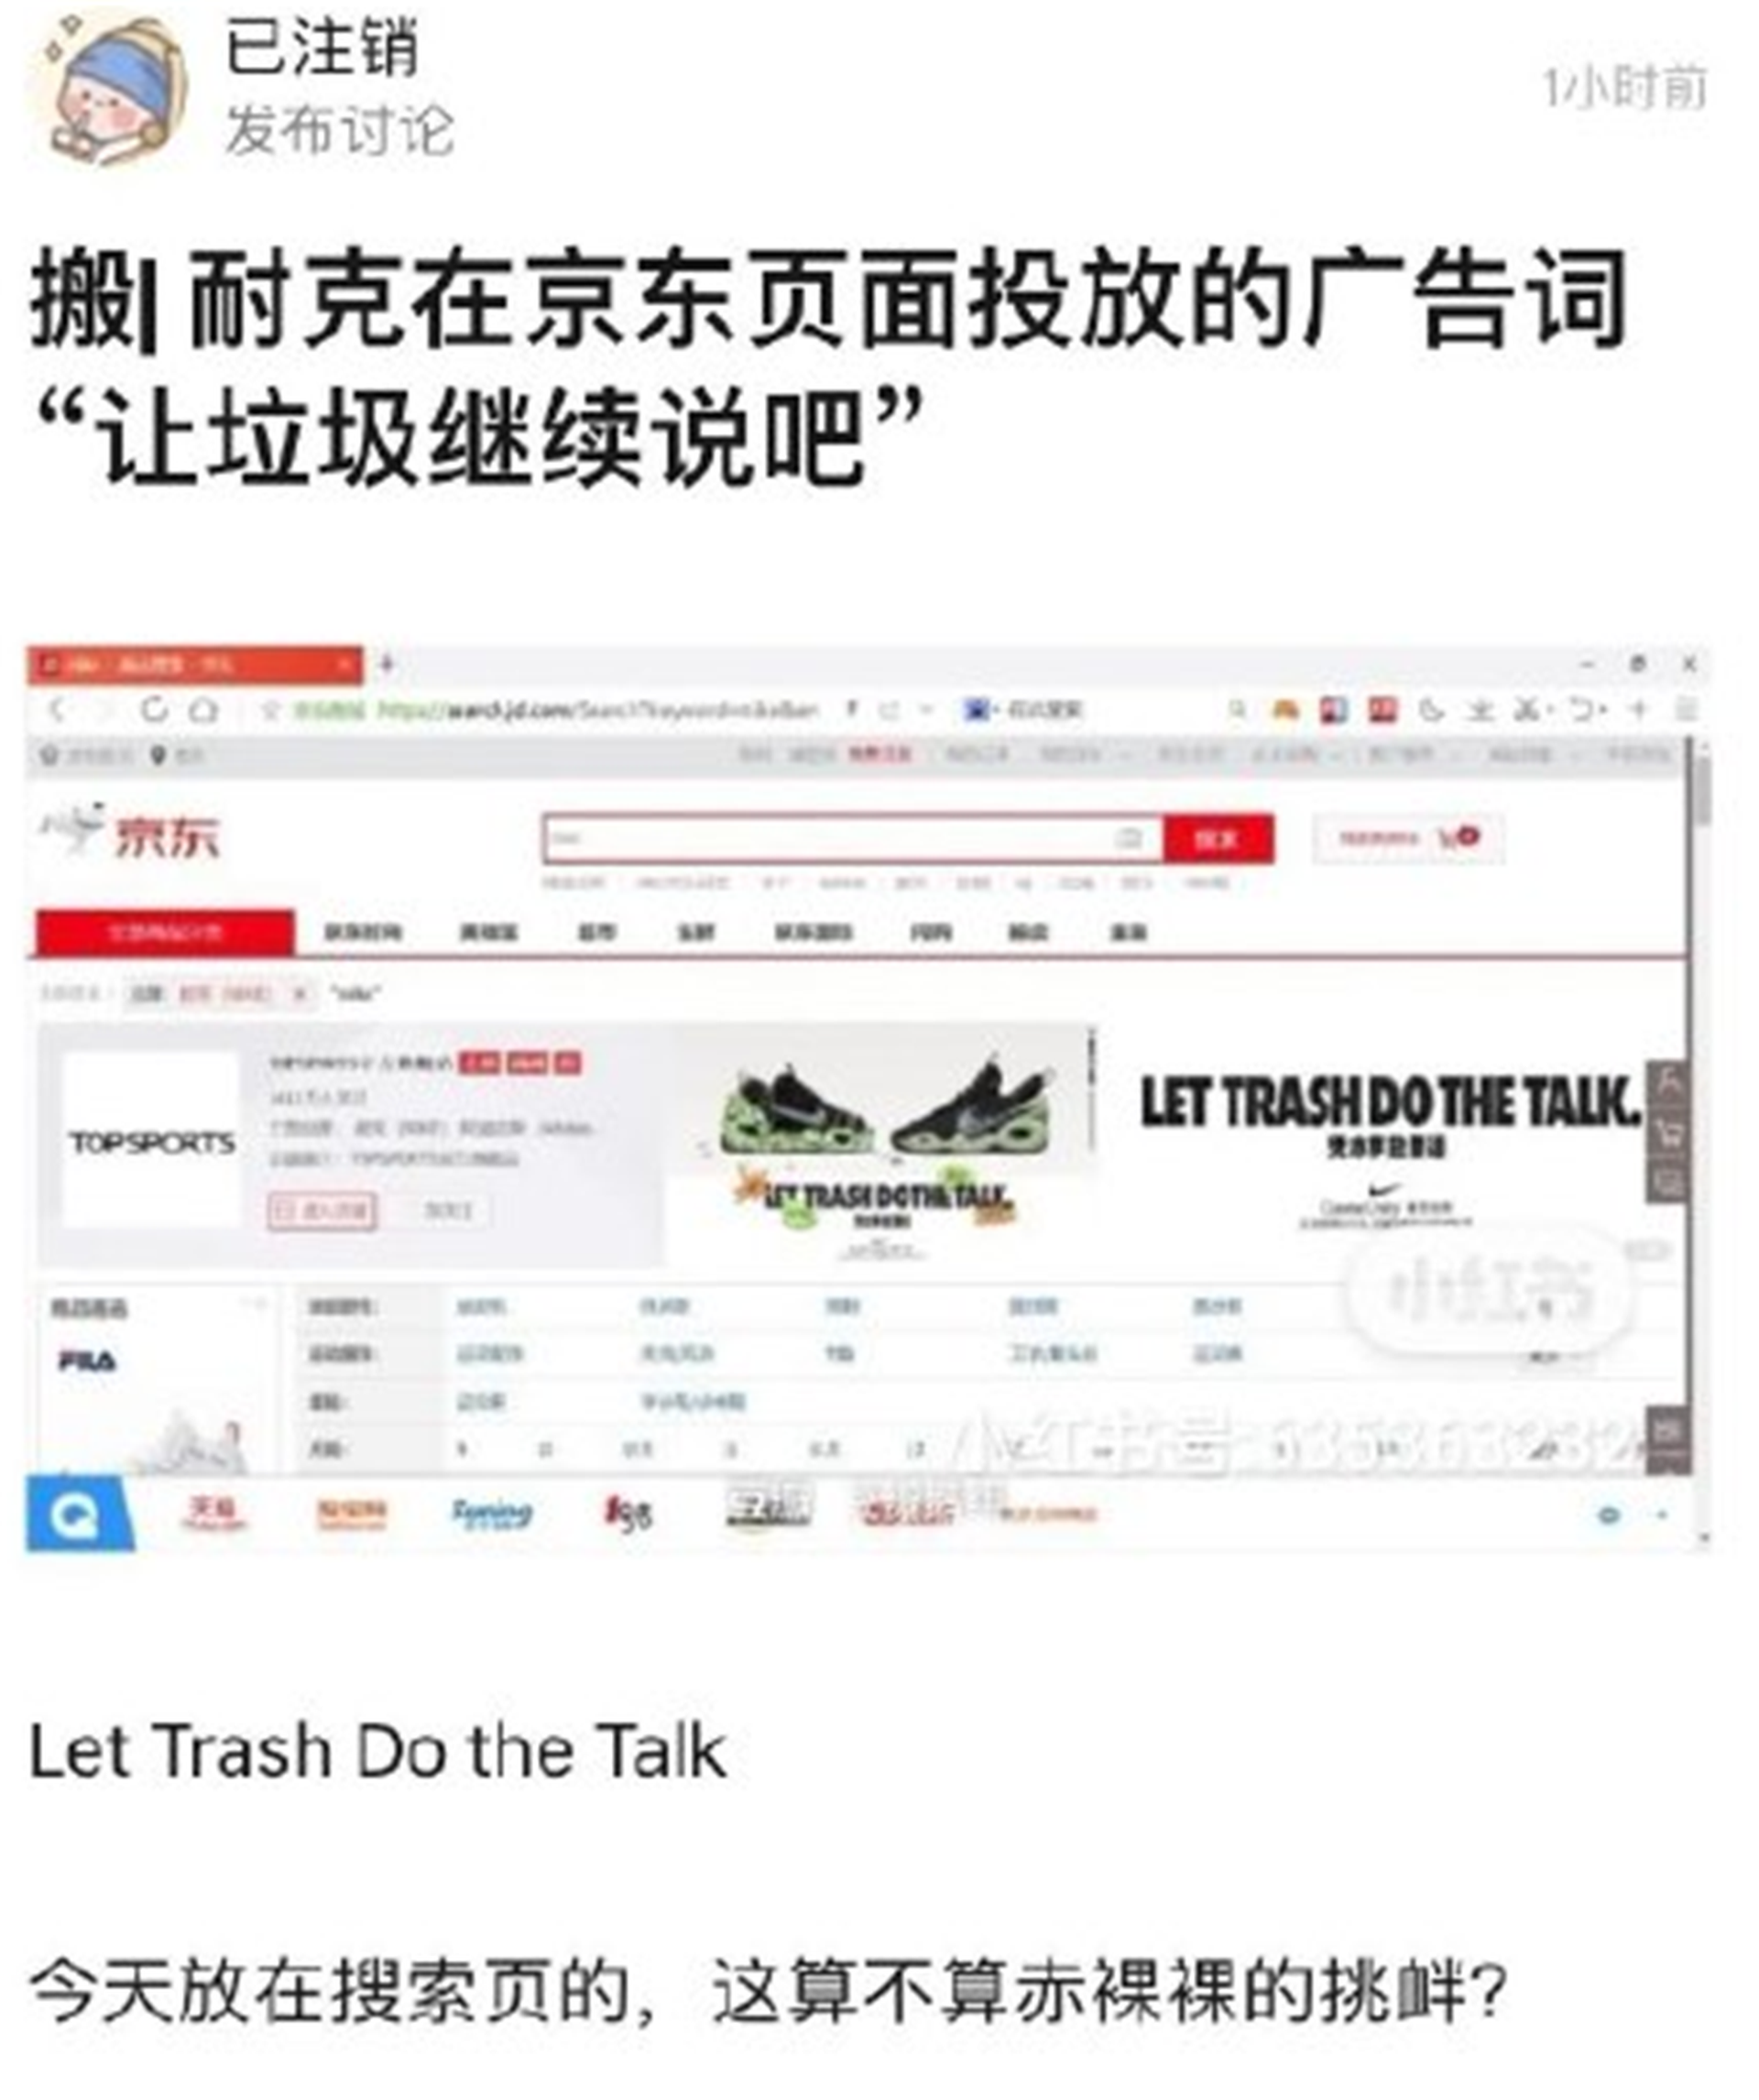 耐克等app遭中国手机商集中下架最新广告语被批挑衅 图 多维新闻 中国